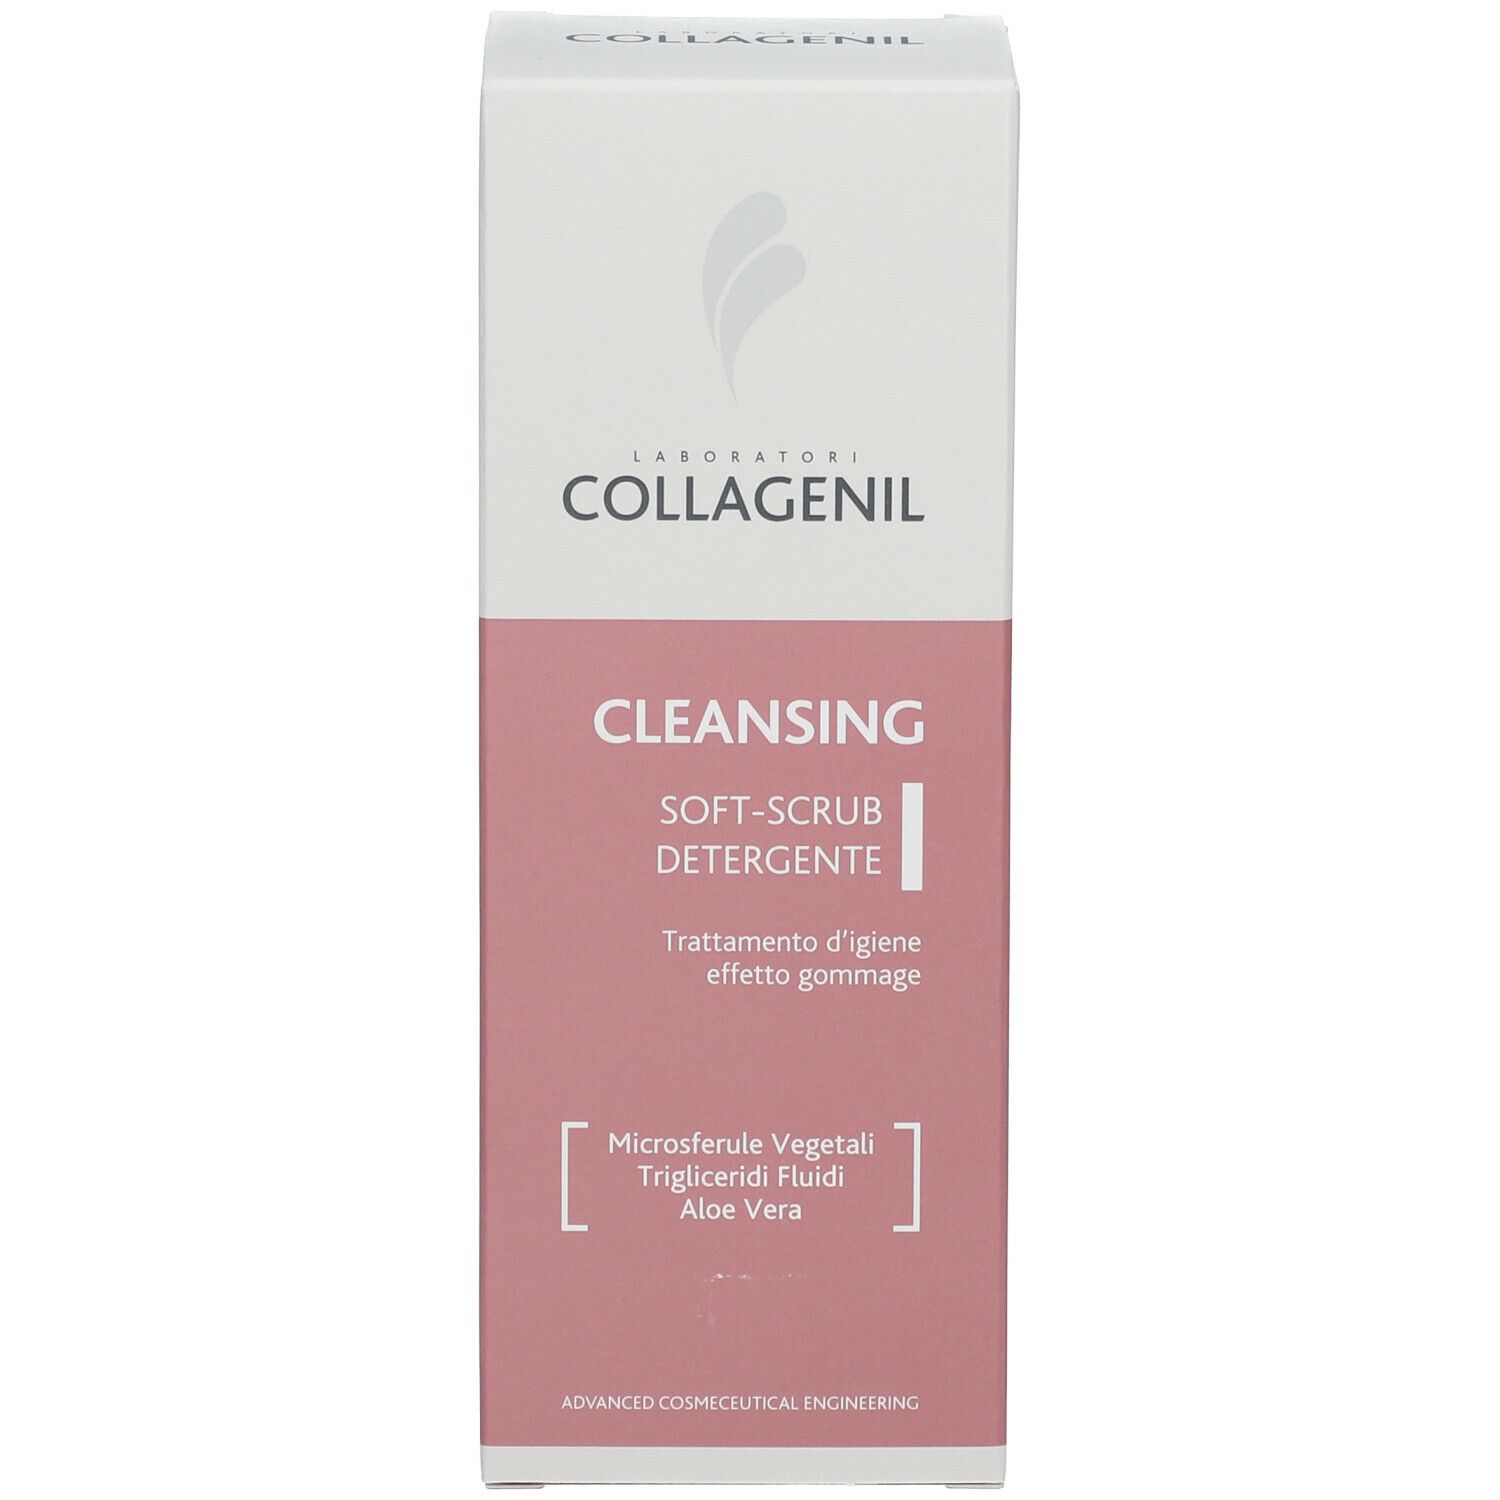 COLLAGENIL Cleansing Soft-Scrub Detergente